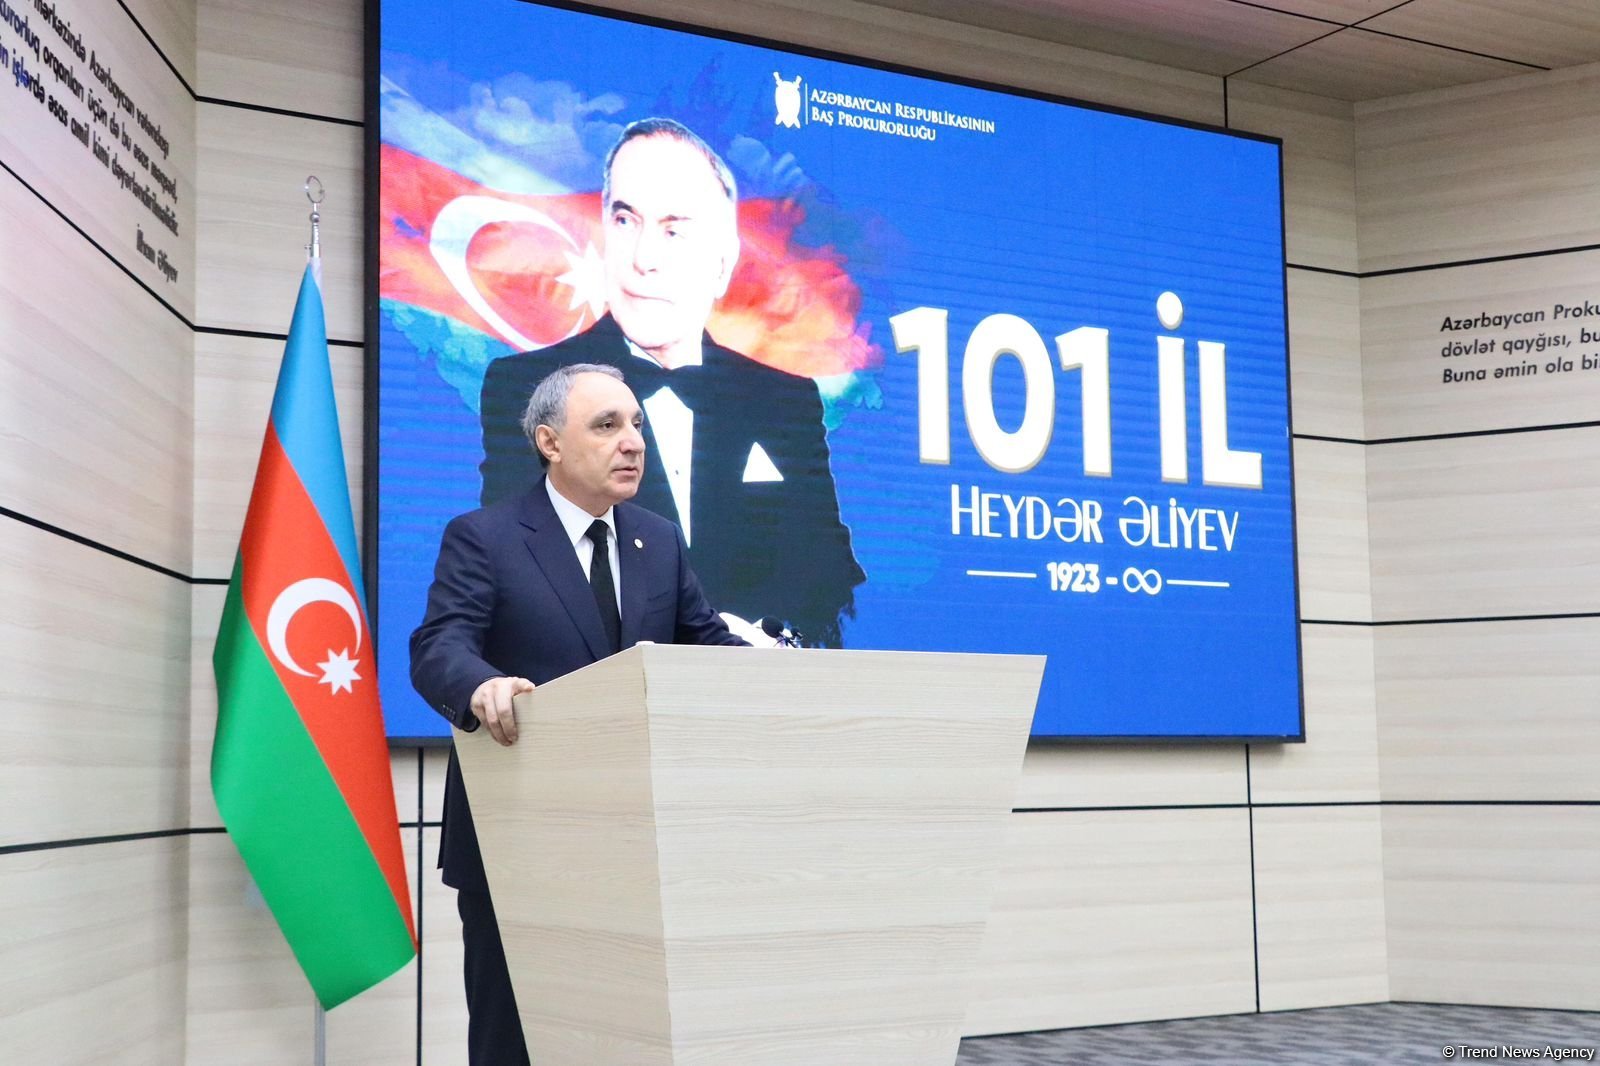 Великий лидер Гейдар Алиев имел исторические заслуги не только в Азербайджане, но и на территории бывшего СССР - Генпрокурор Азербайджана